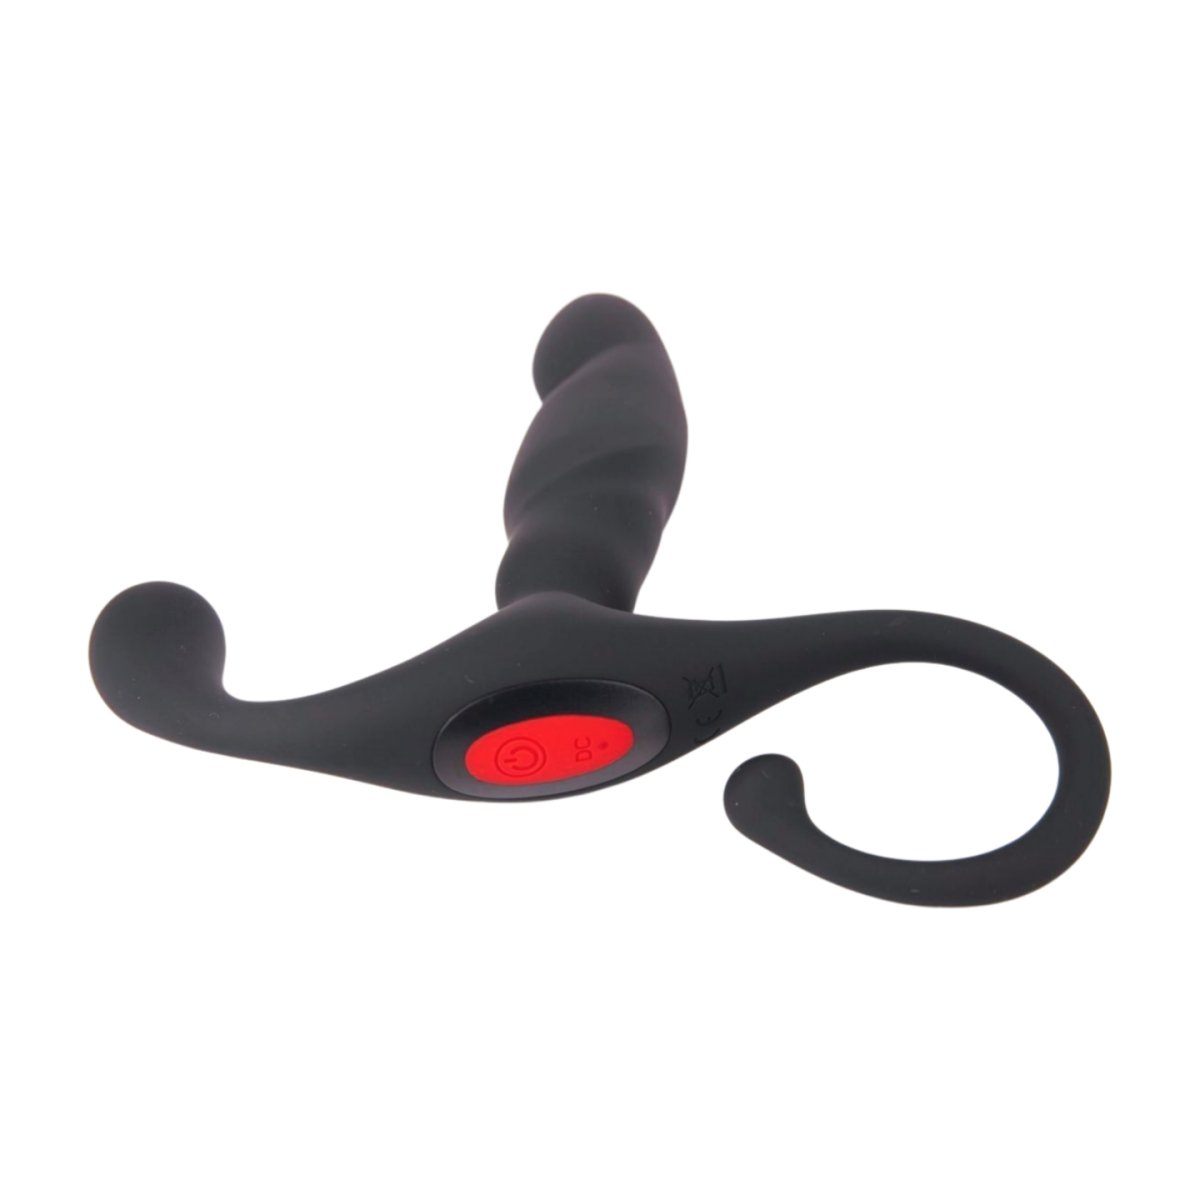 Vibrating Aneros Design - Discover Prostate Pleasure pic